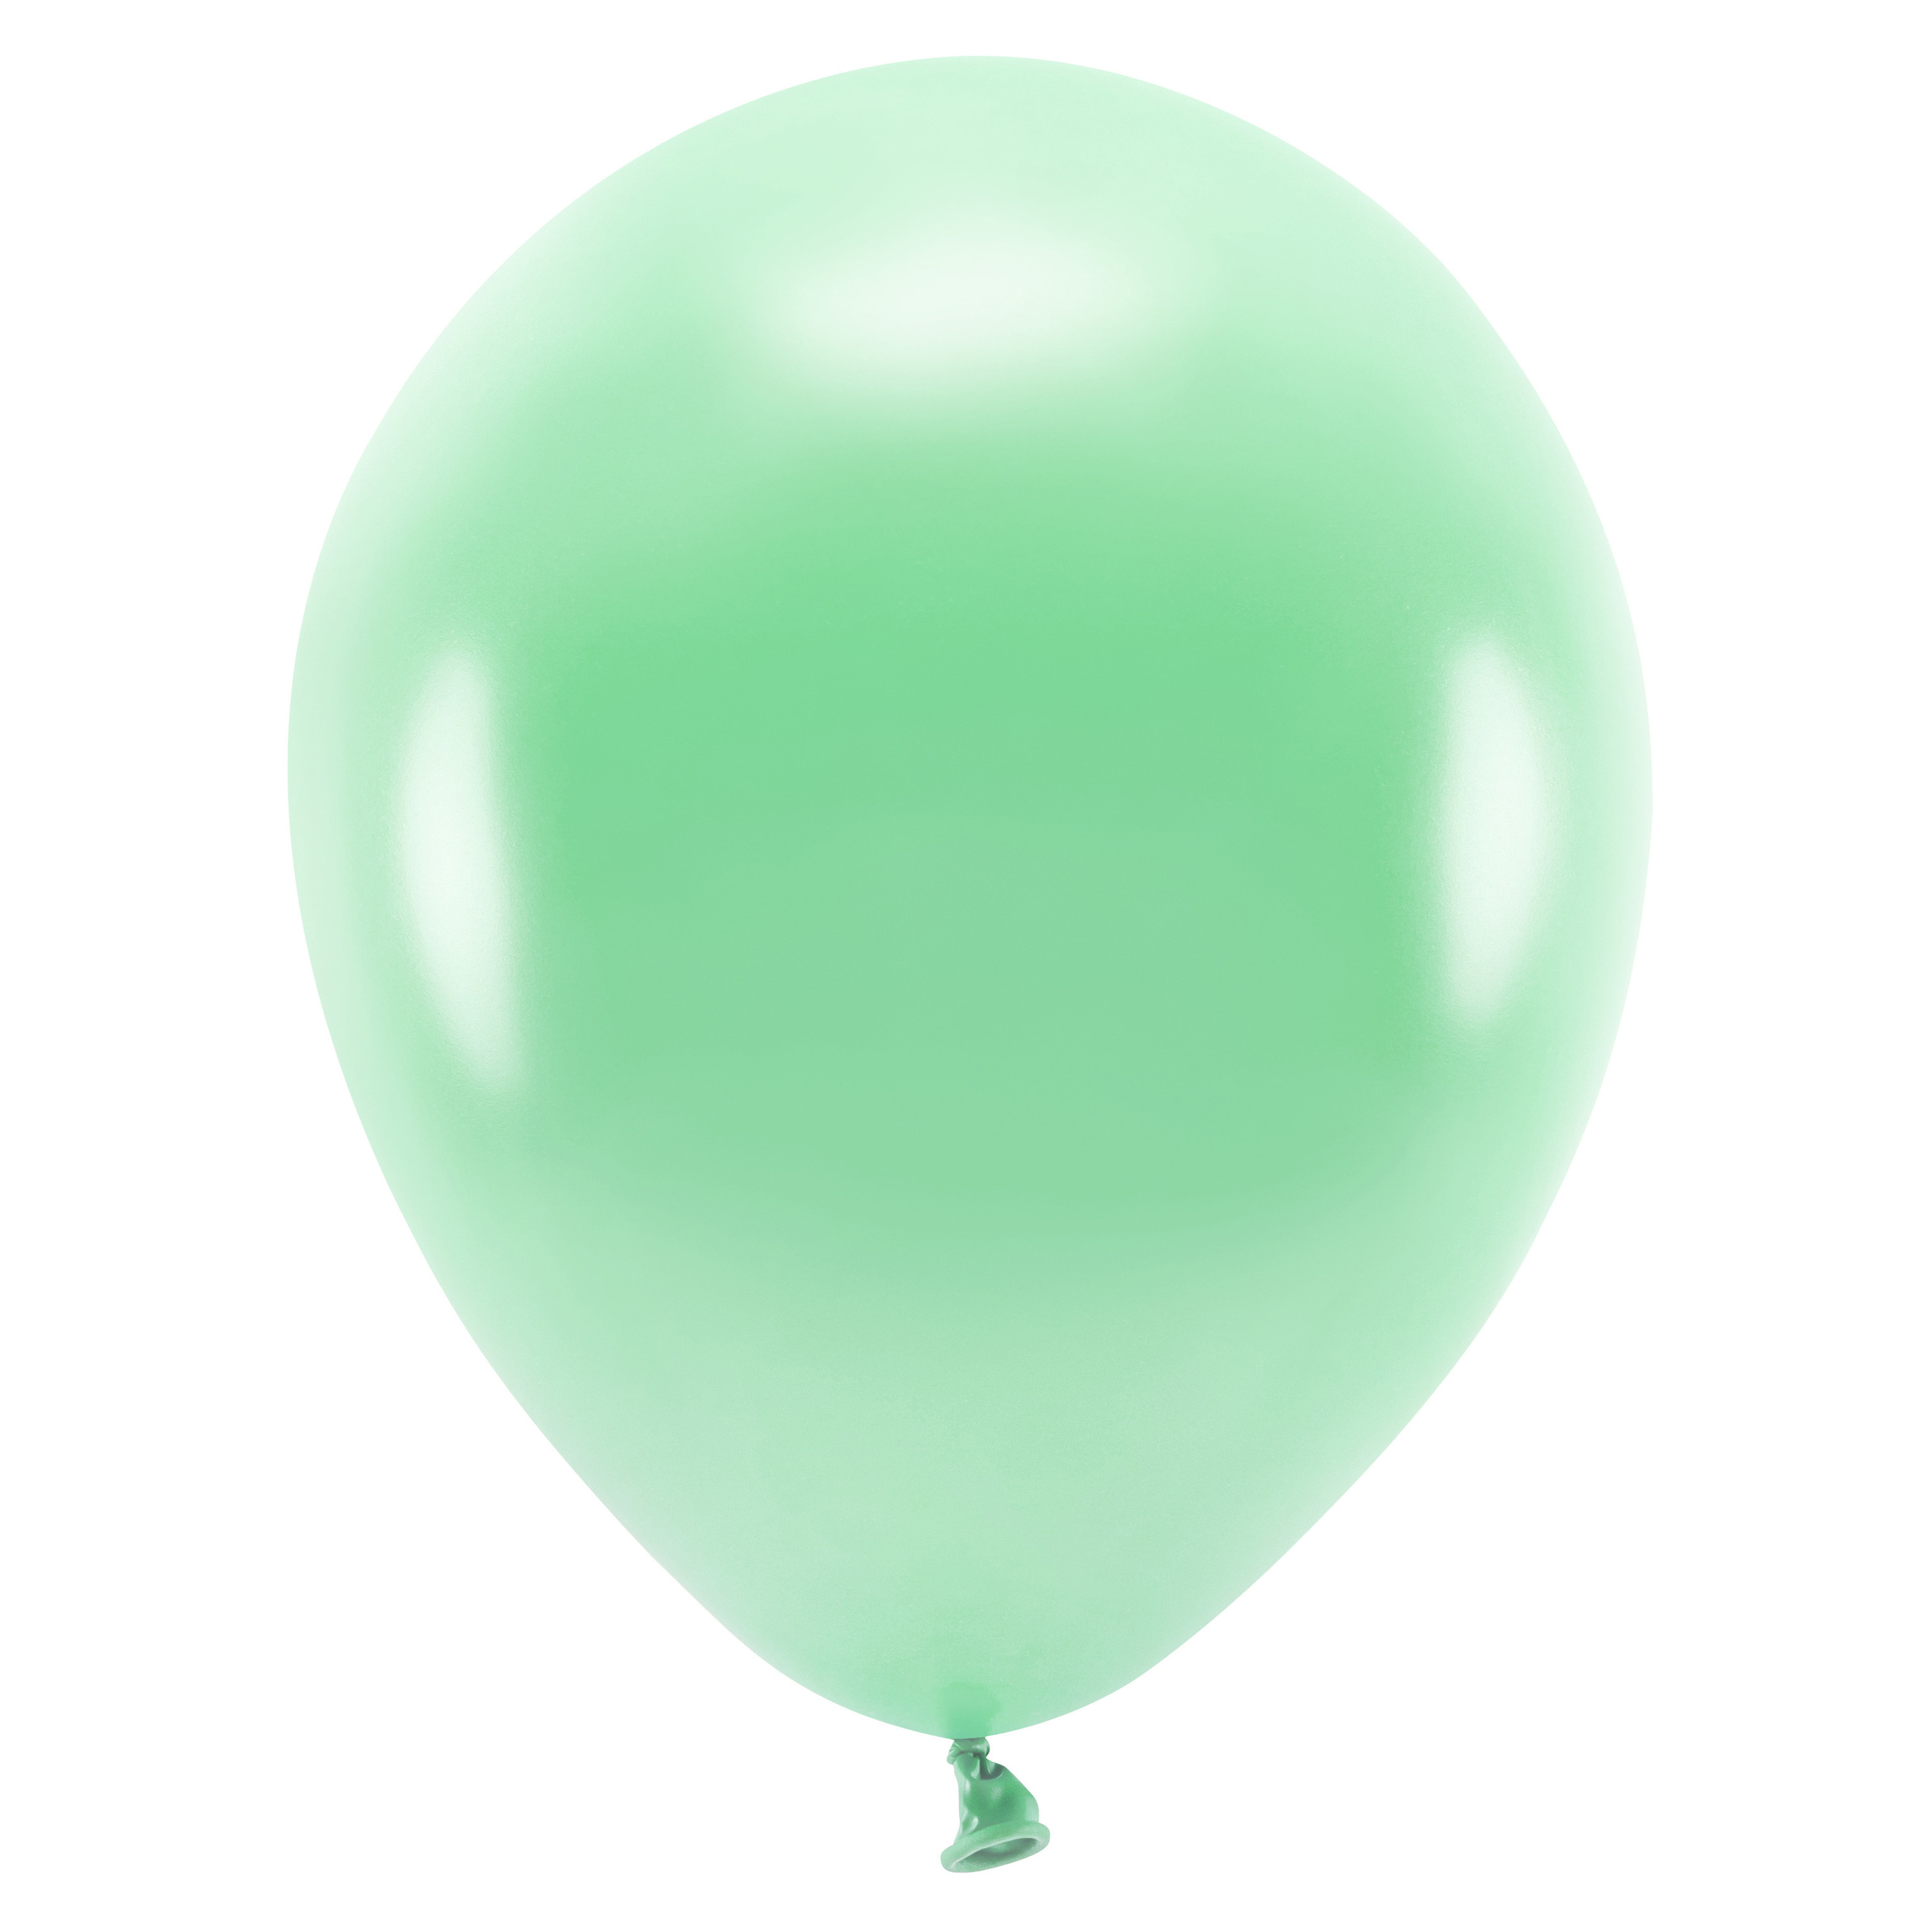 100x Mintgroene ballonnen 26 cm eco/biologisch afbreekbaar - Milieuvriendelijke ballonnen - Feestversiering/feestdecoratie - Mintgroen thema - Themafeest versiering - Action products